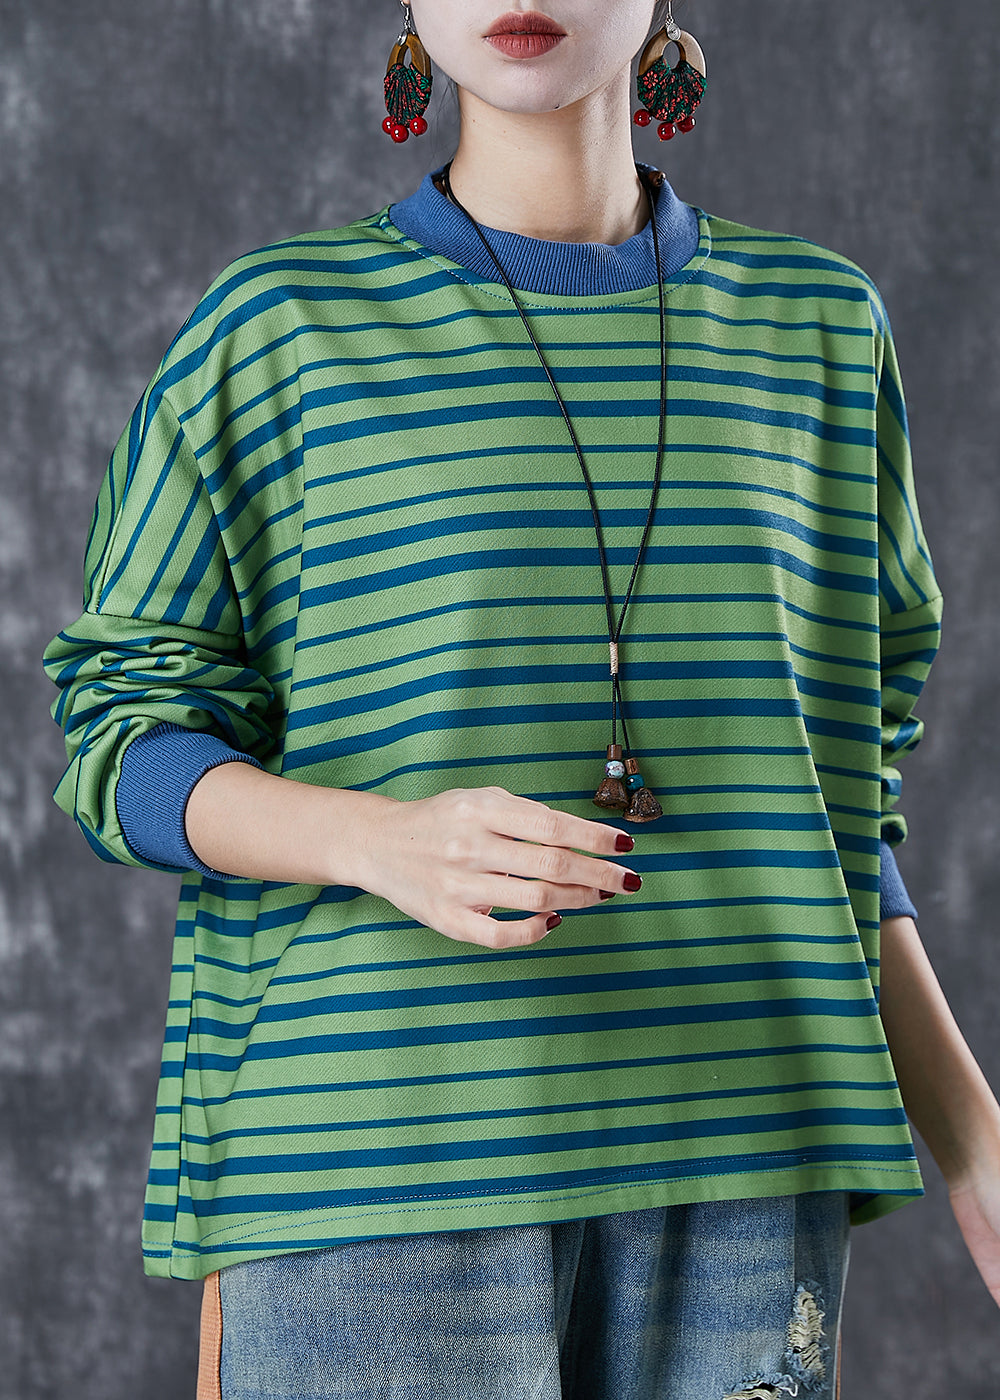 Style Green Oversized Striped Cotton Sweatshirt Streetwear Spring